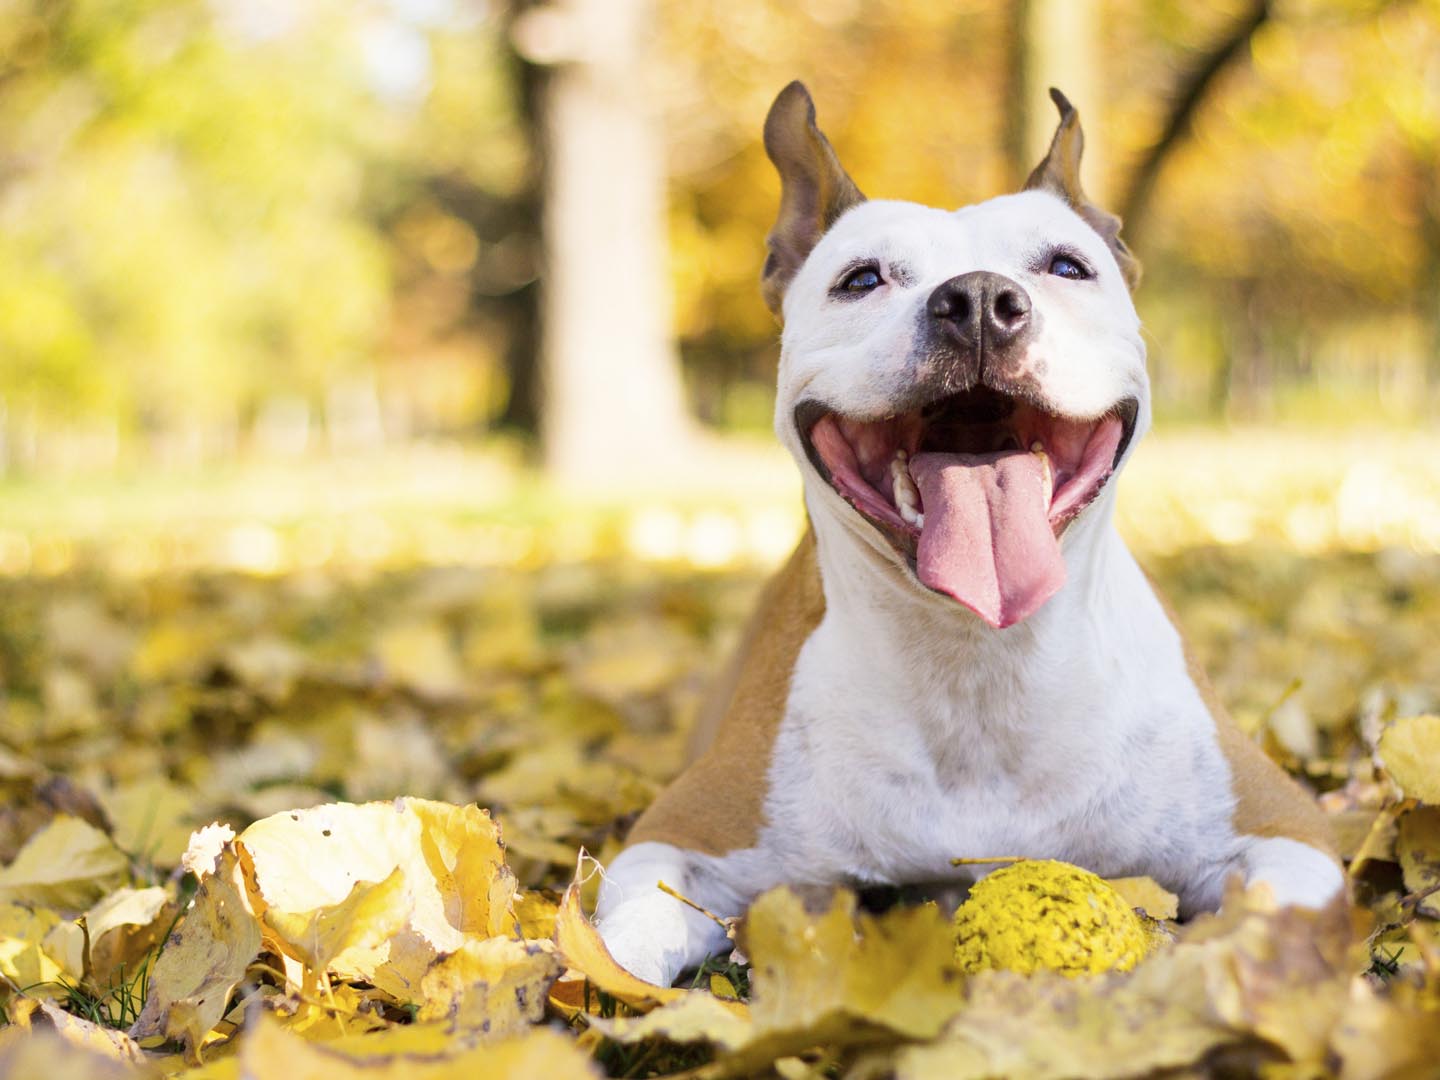 Smiling dog enjoying the beautiful sunny autumn day